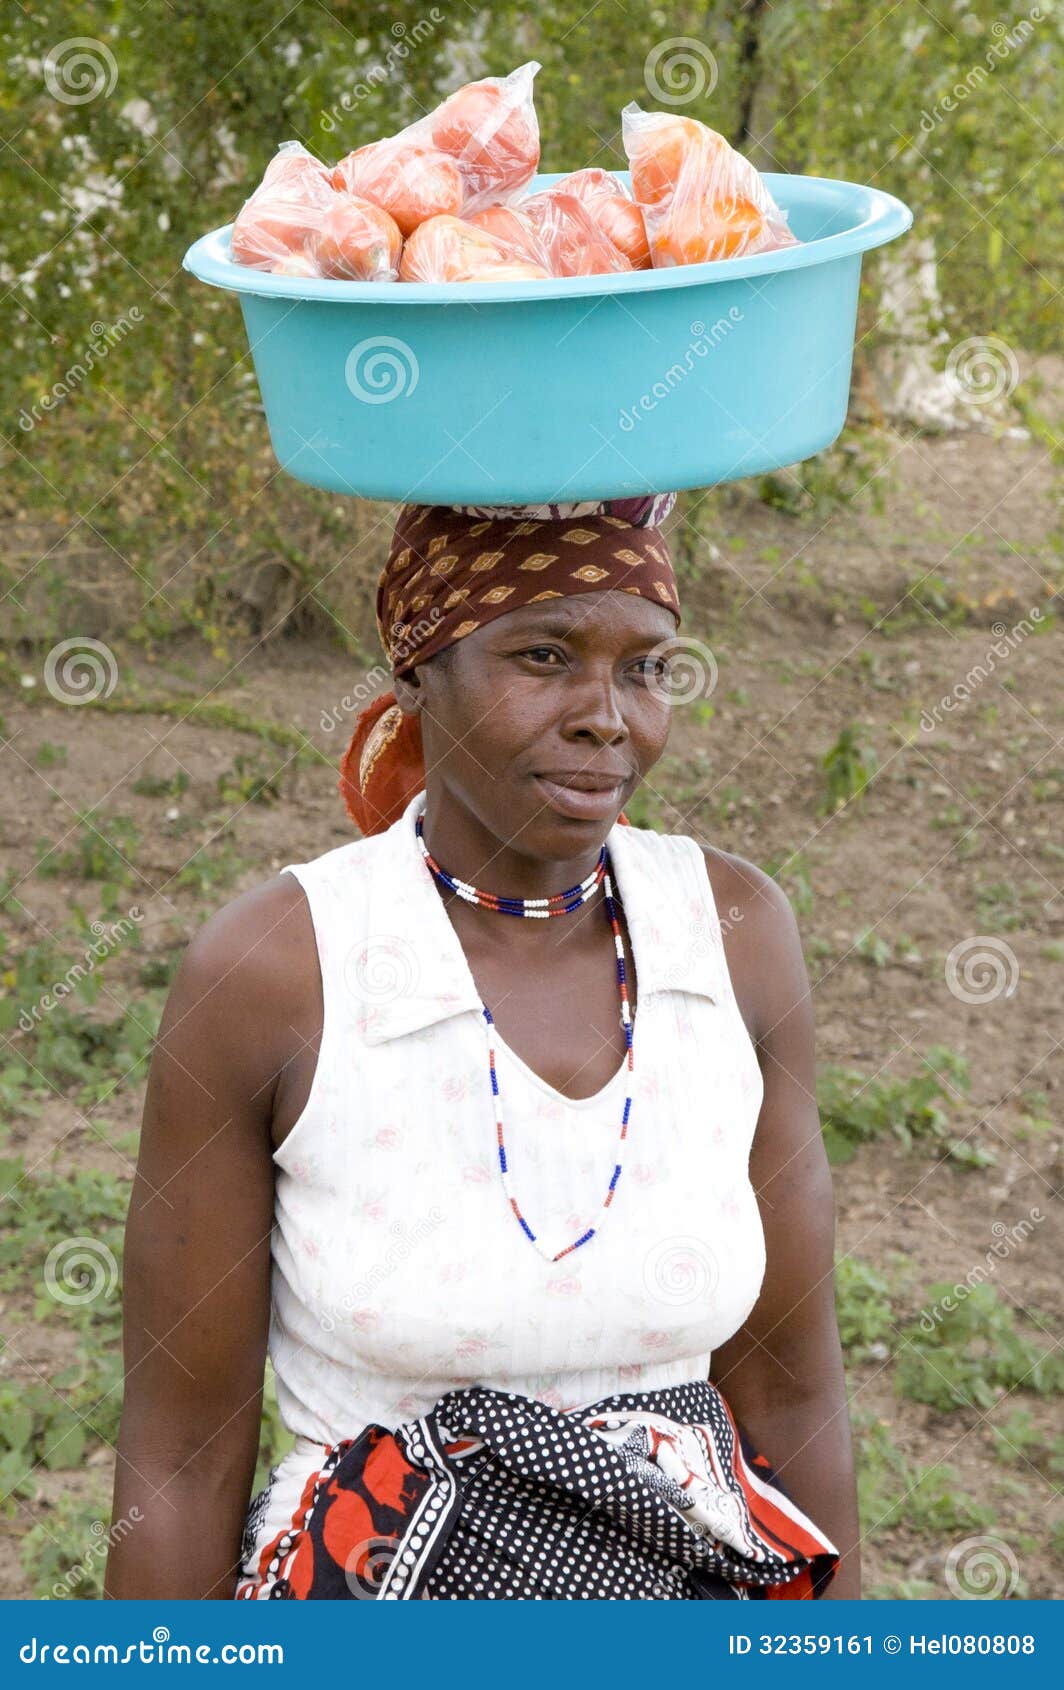 Негритянка ест. Женщина с тарелкой на голове. Африканские женщины с грузом на голове. Женщина в Африке с тазом на голове. Африканские женщины с тарелкой на голове.